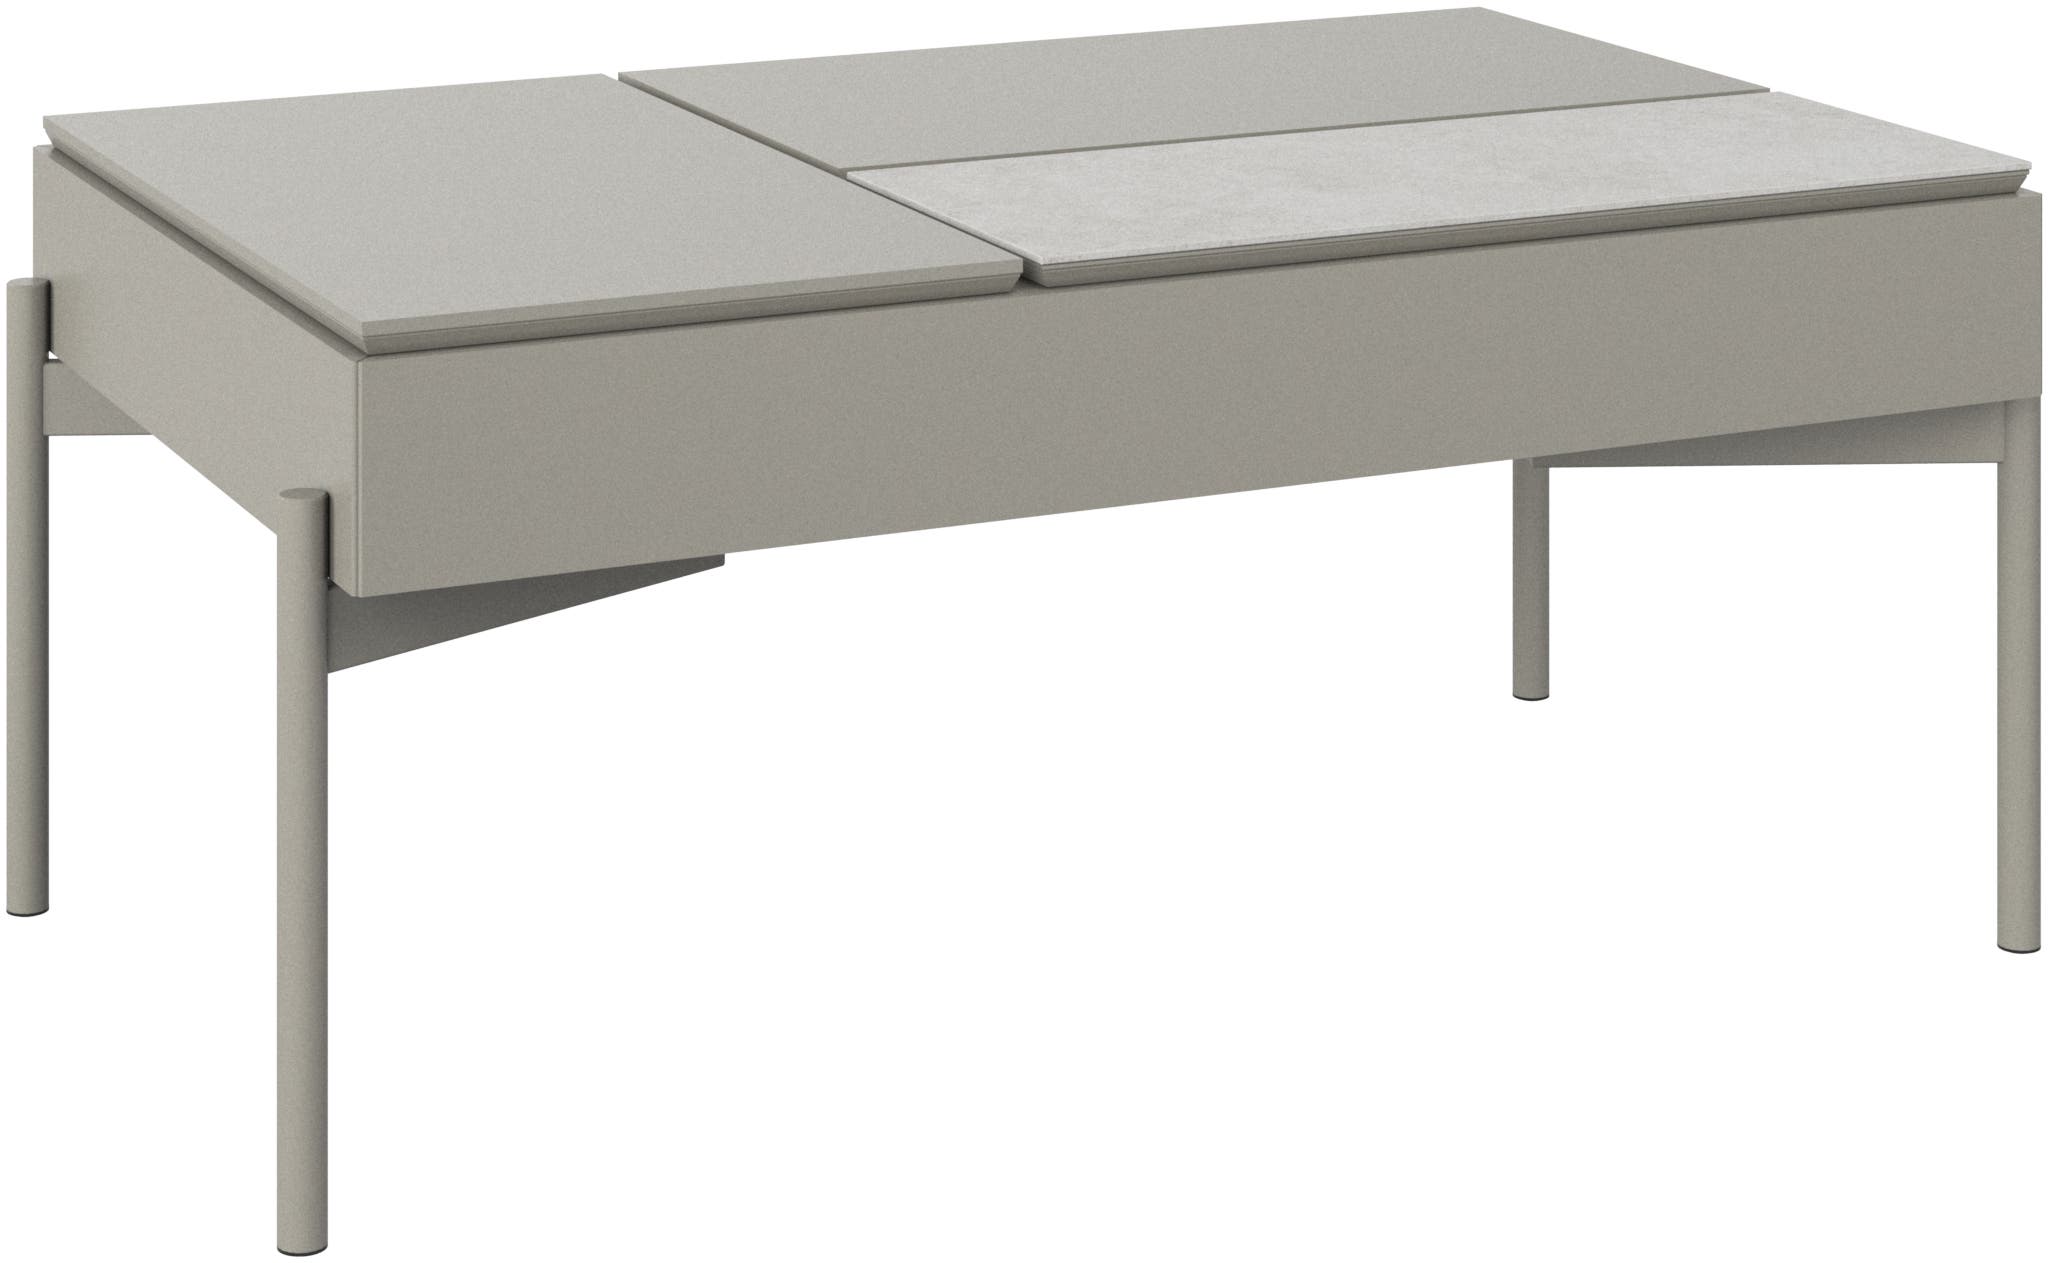 デザイナーテーブル | デンマークデザインの家具 | ボーコンセプト